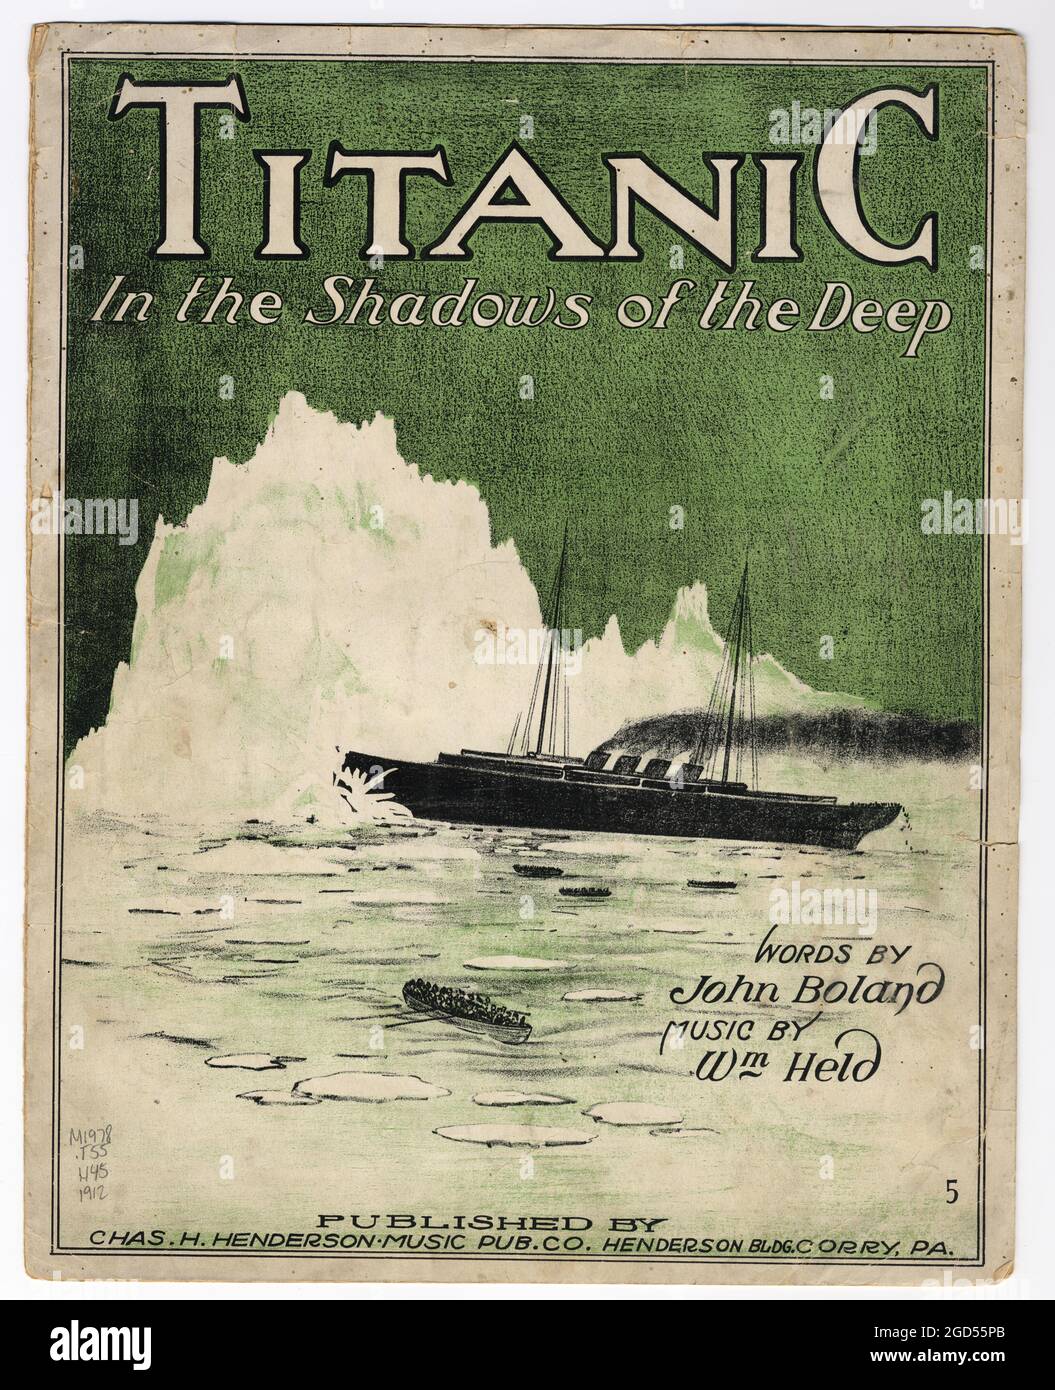 Titanic in the Shadows of the Deep. Worte von John Boland. Musik von WM Held. Chas. H. Henderson Music Pub. Co., Corry, Pa, c1912, monografisch. Abdeckung. Stockfoto